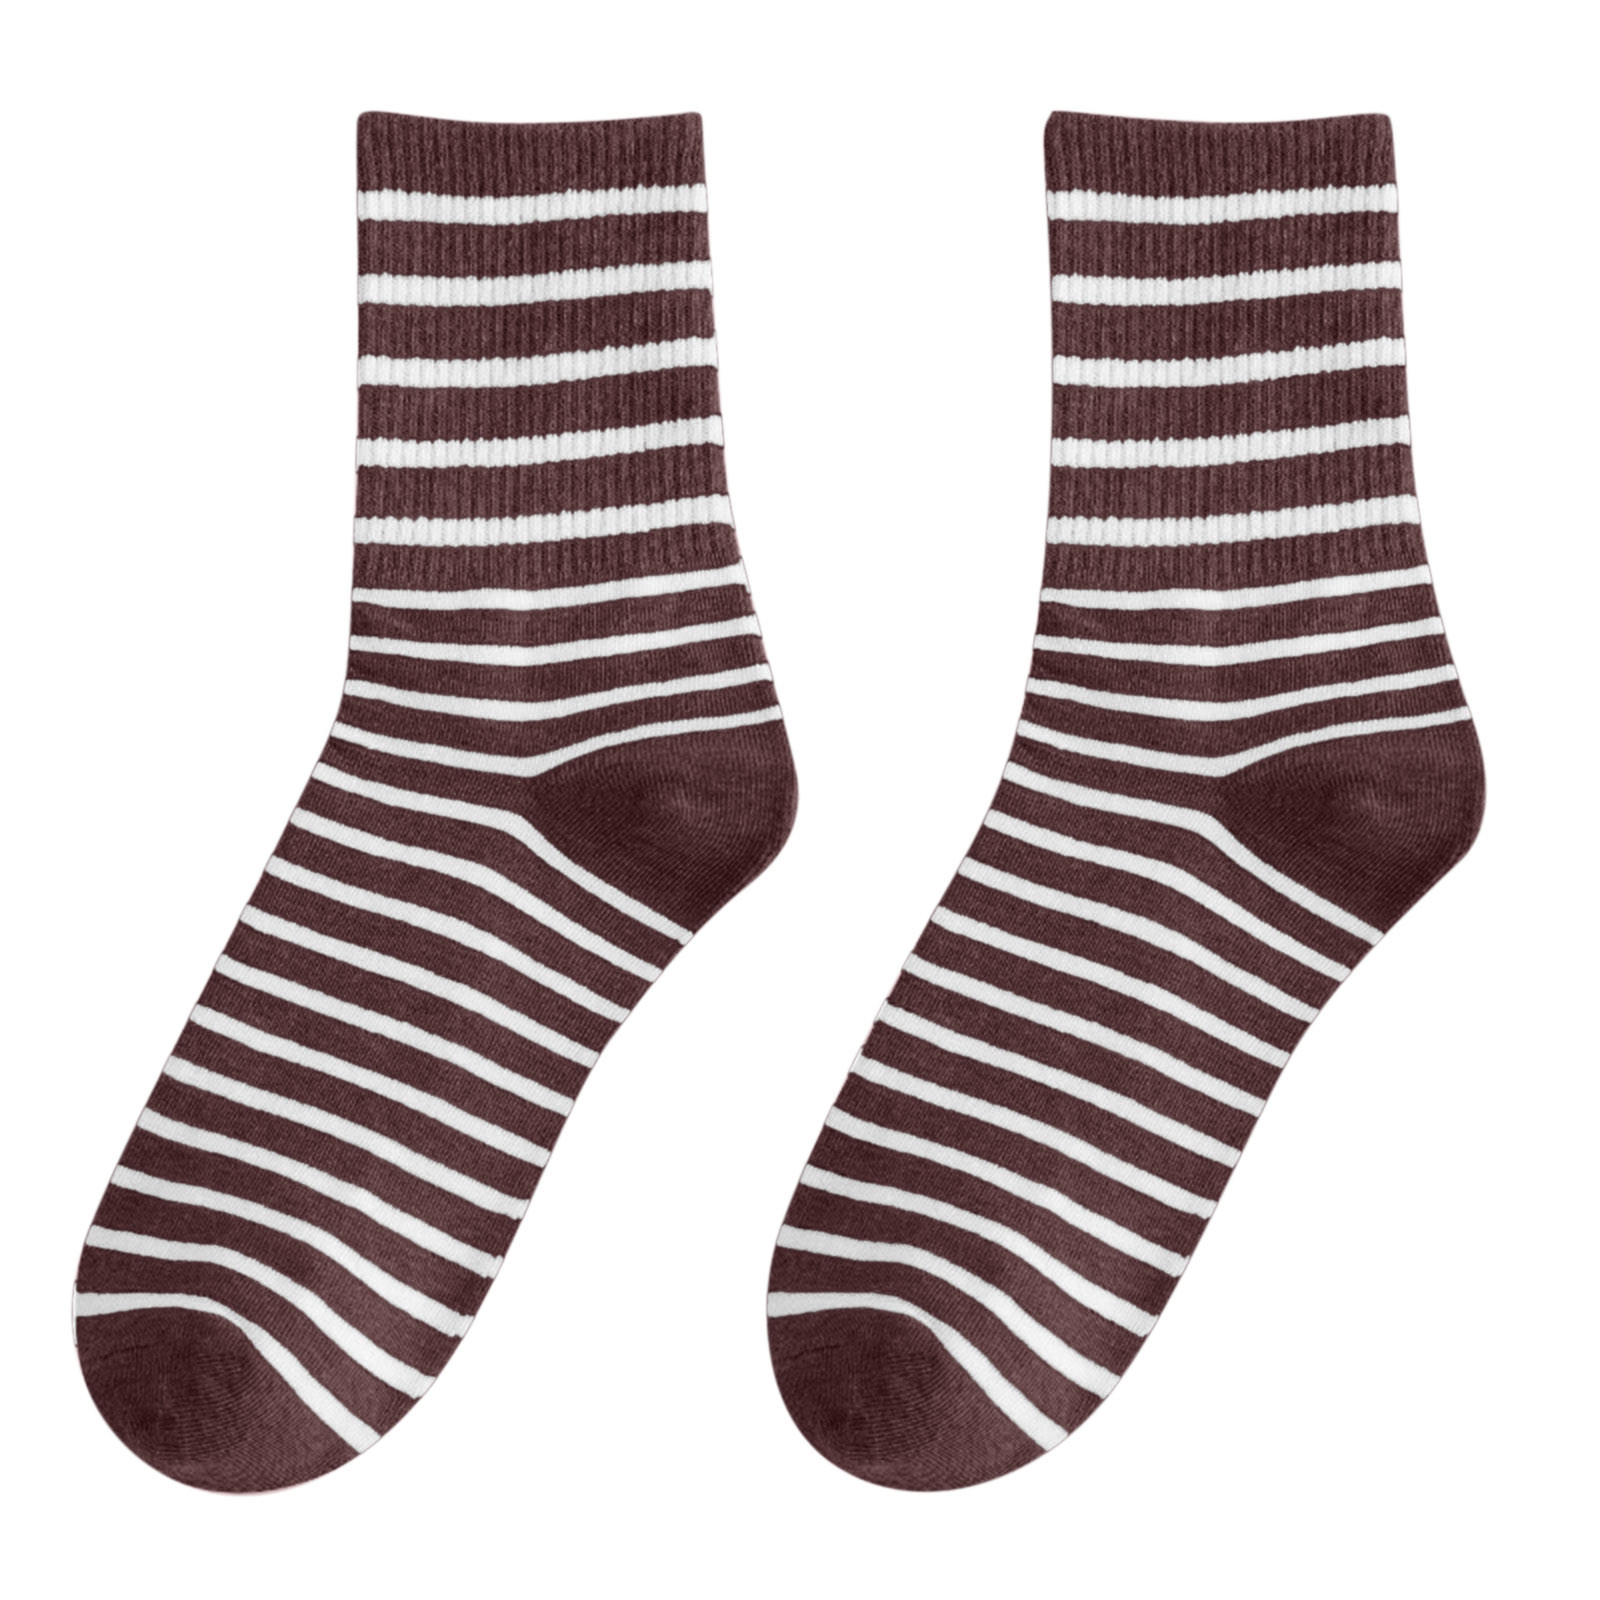 CAKVIICA Fuzzy Socks For Women With Grips Plush Fuzzy Socks Sleep Cozy ...